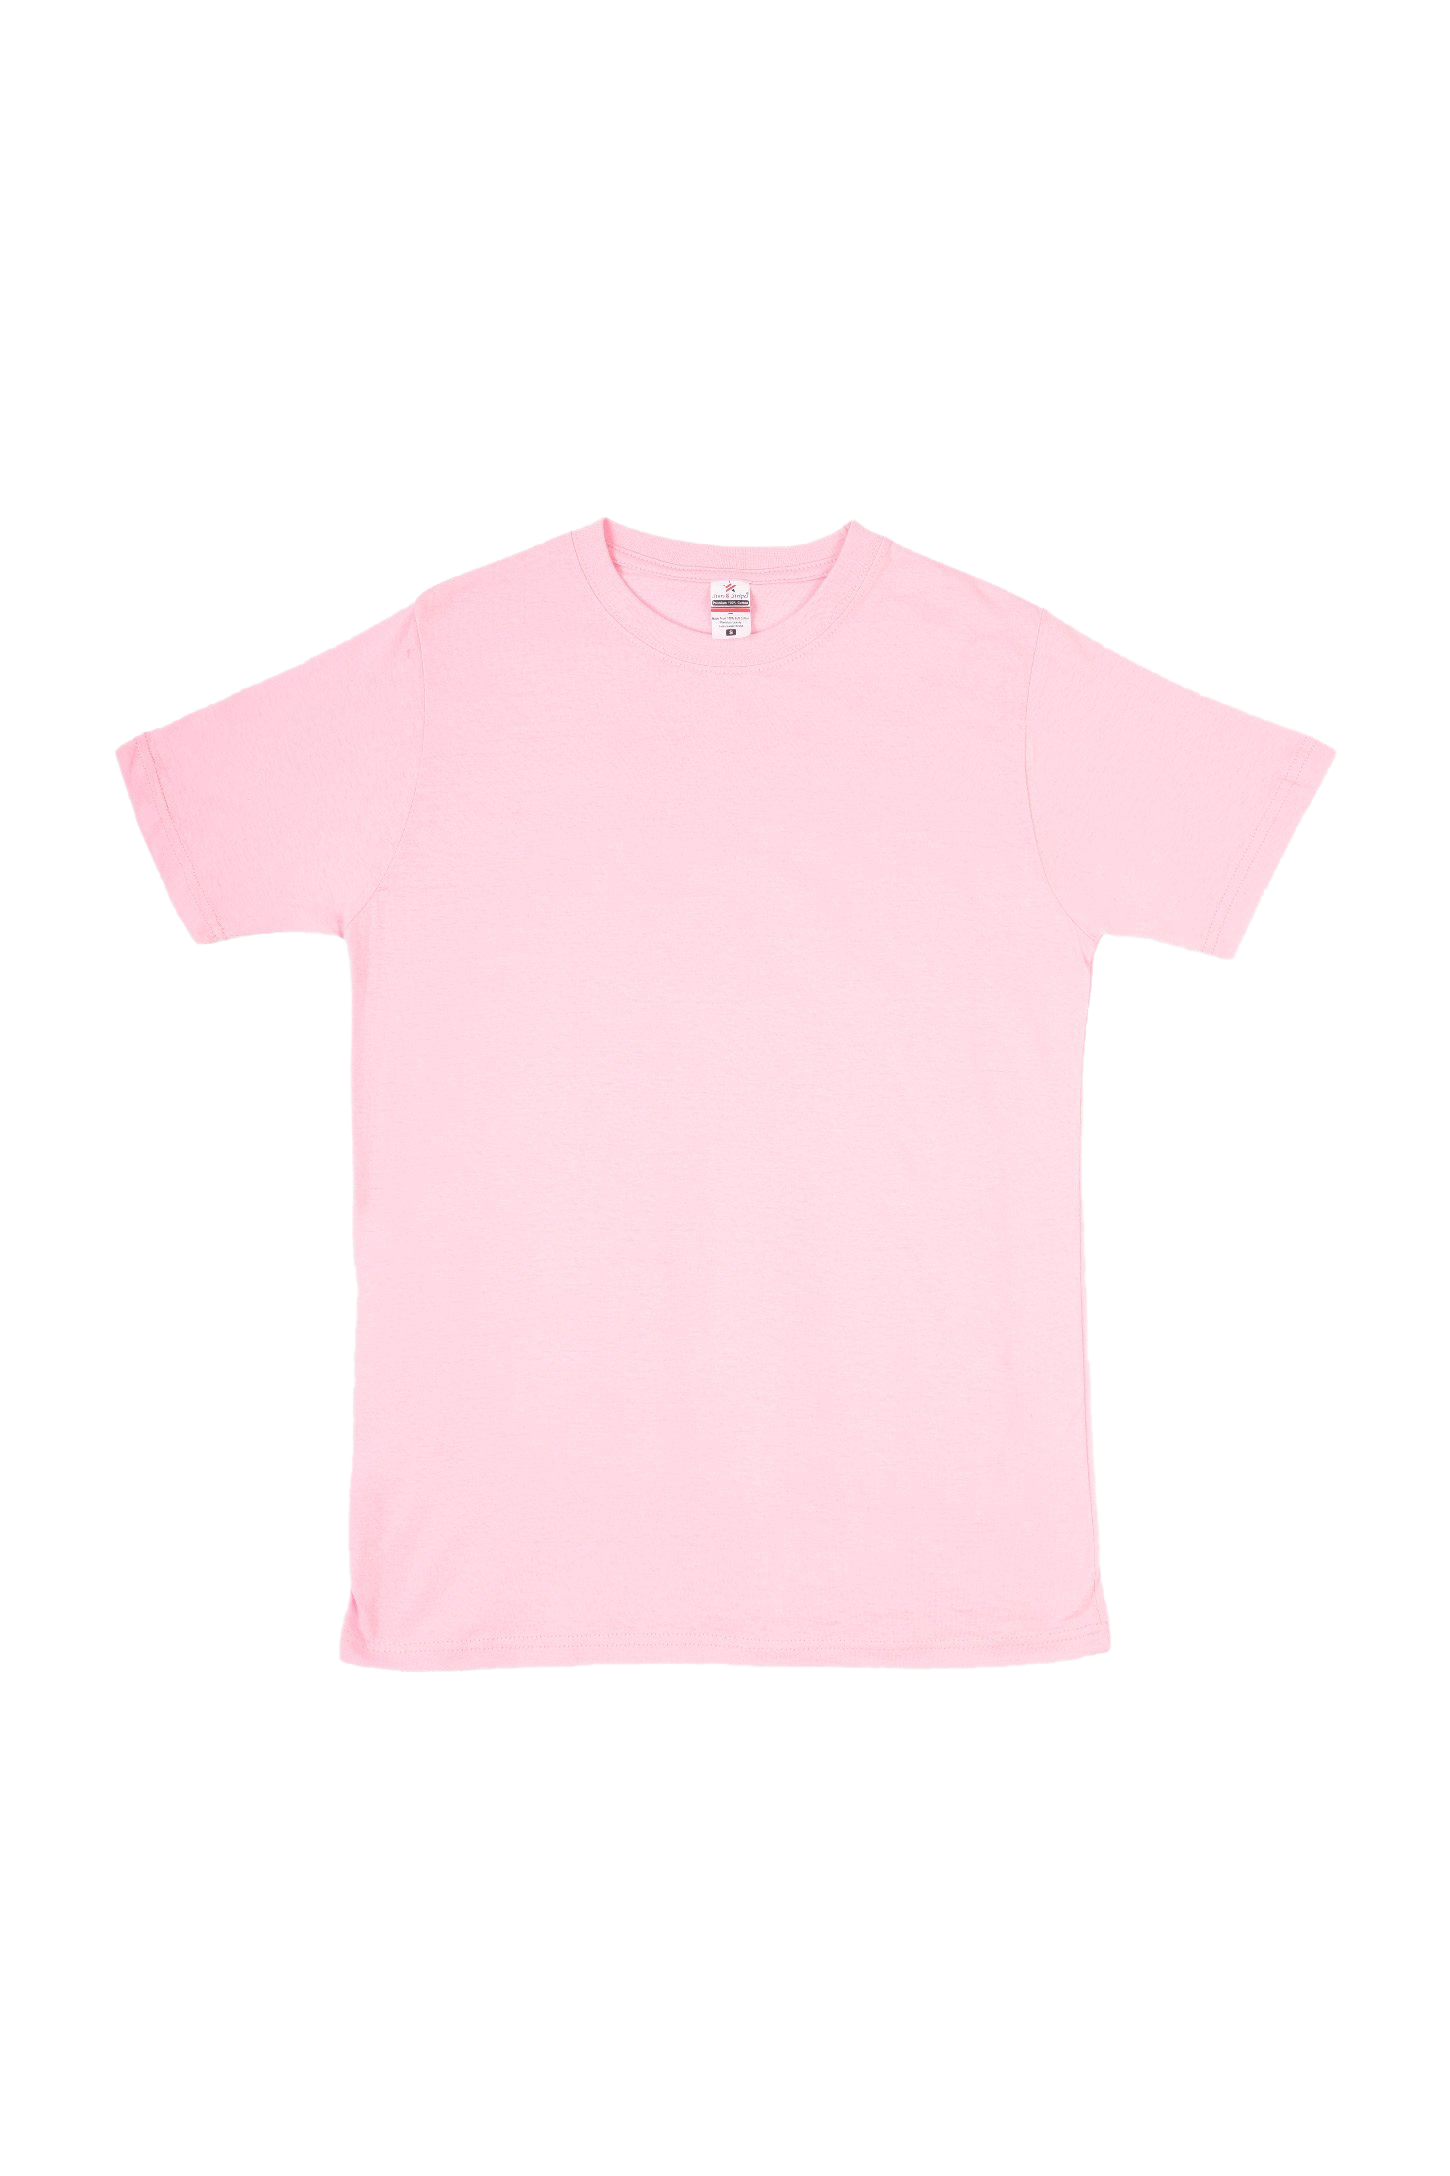 Camiseta rosa llano PNG Imagen de alta calidad PNG